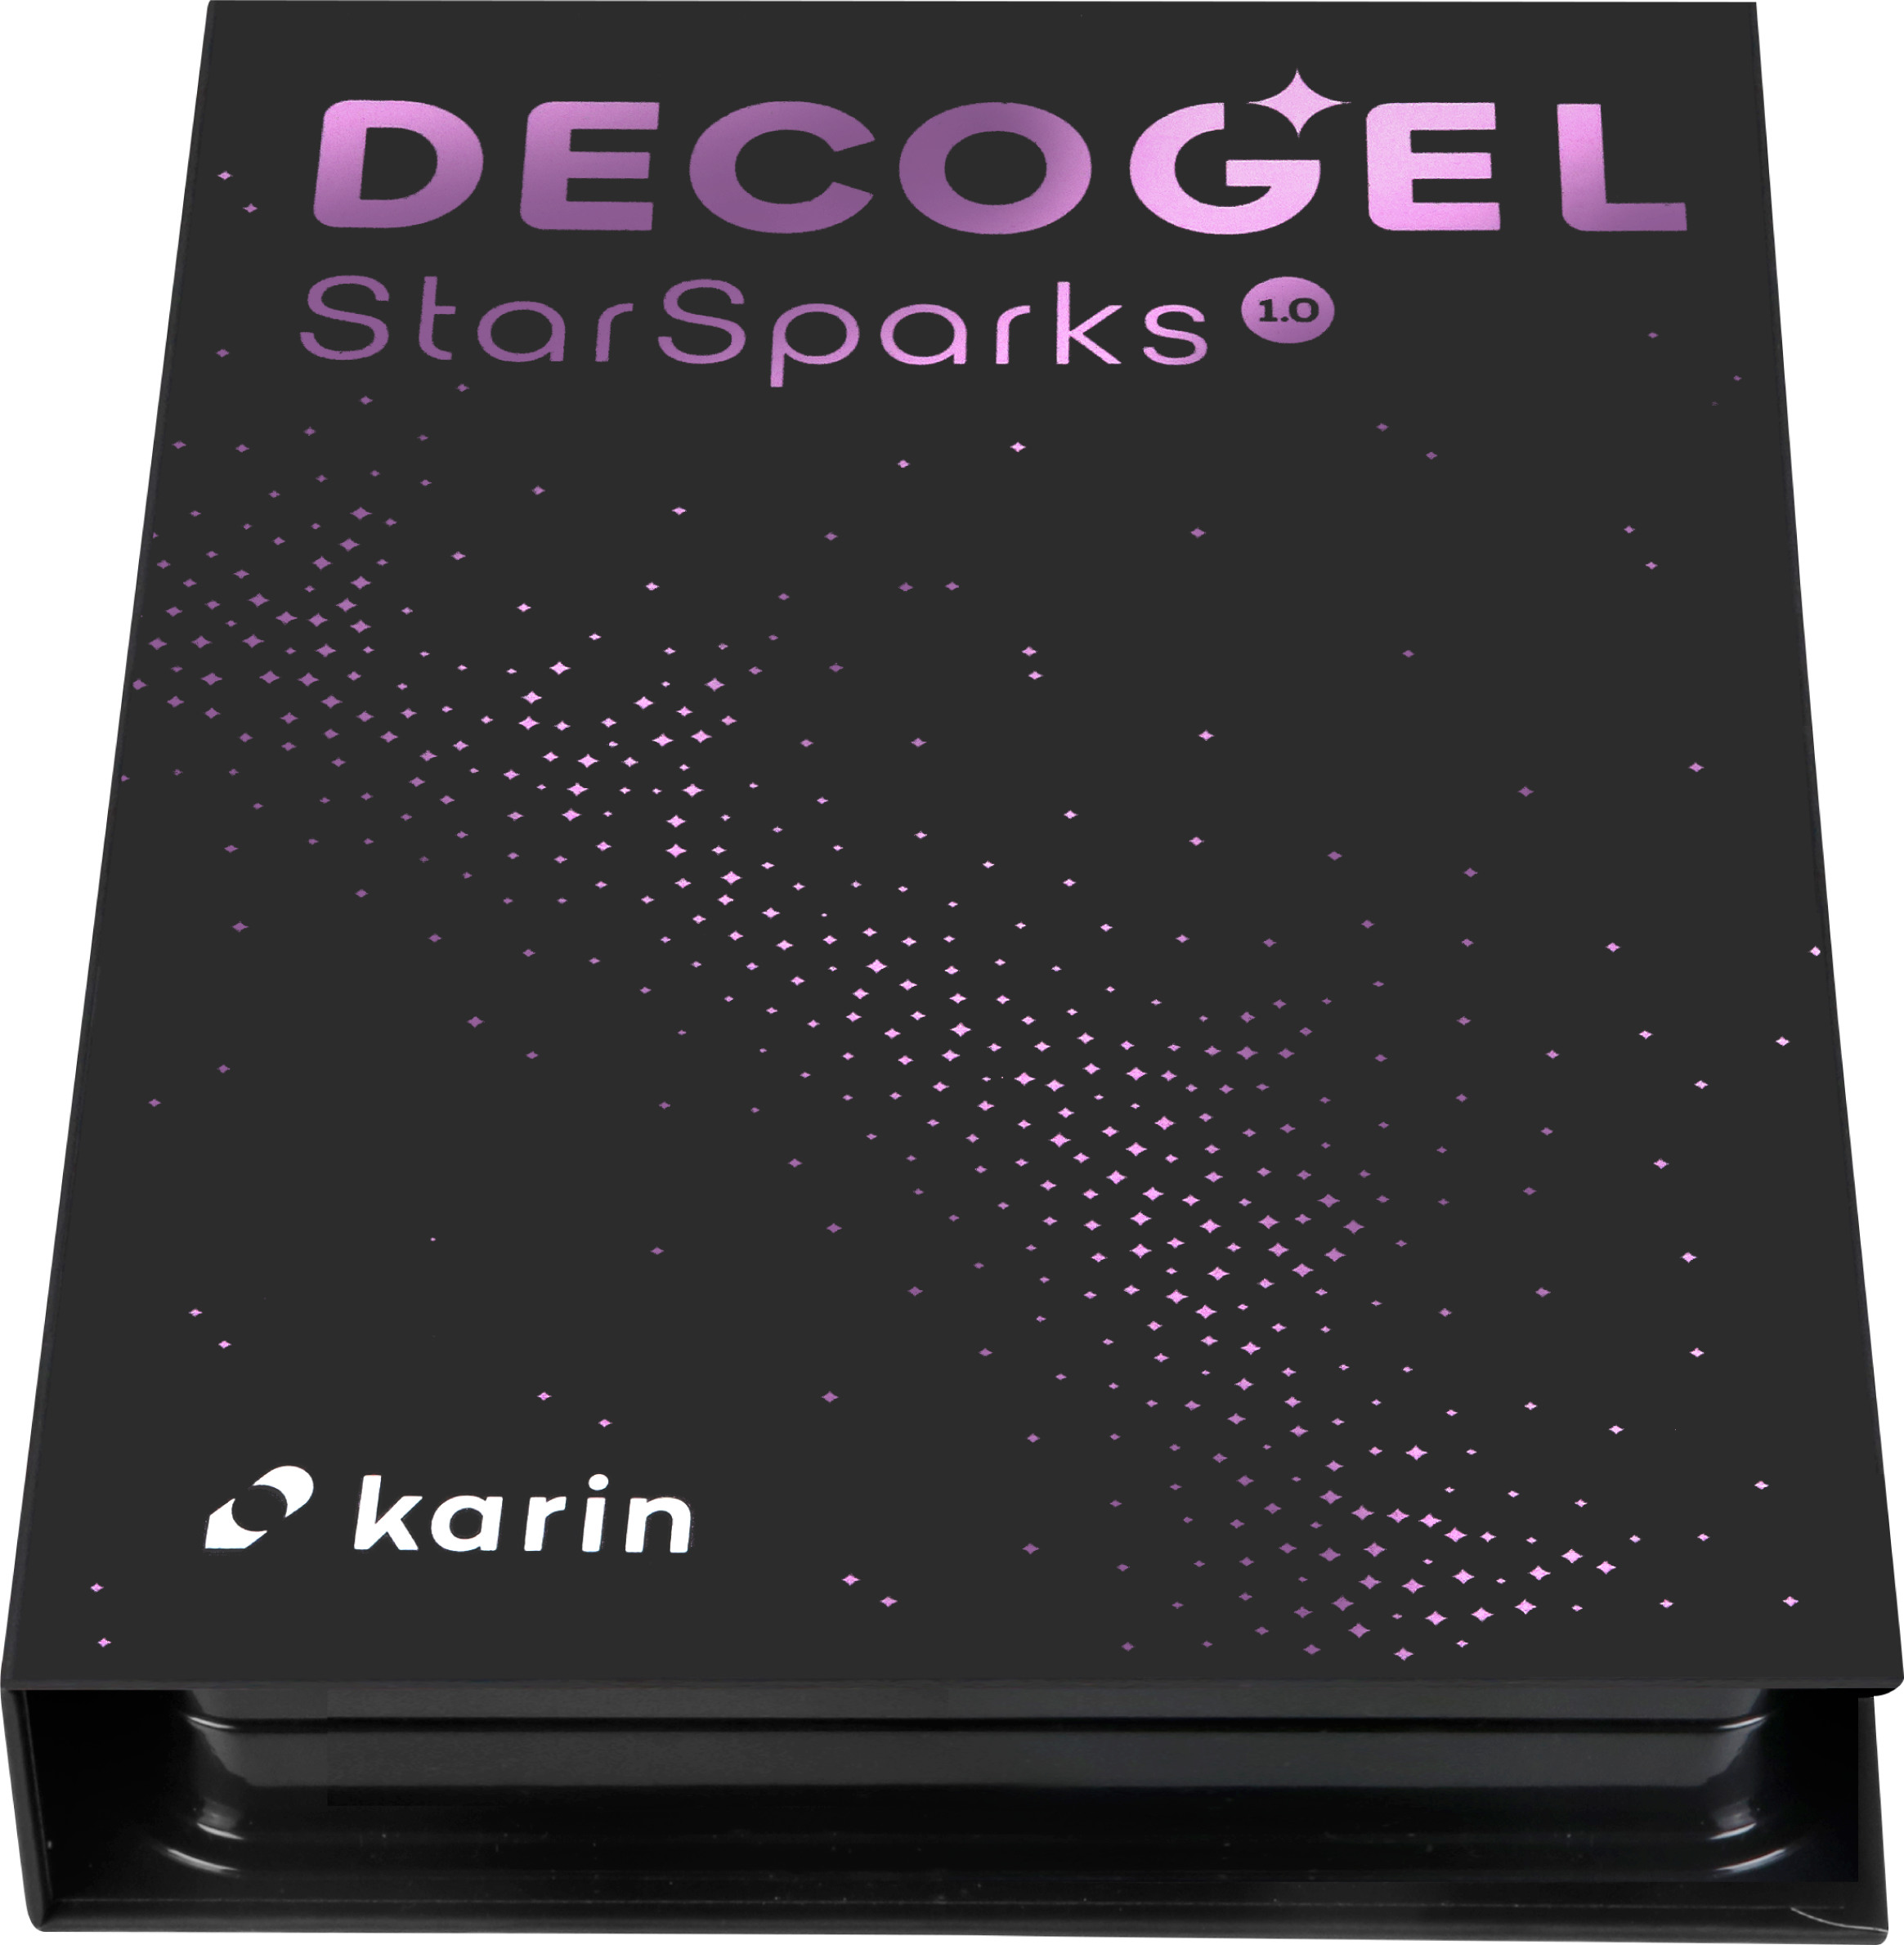 KARIN Gelpen DECOGEL 1.0 30C1 Star Sparks 20 couleurs